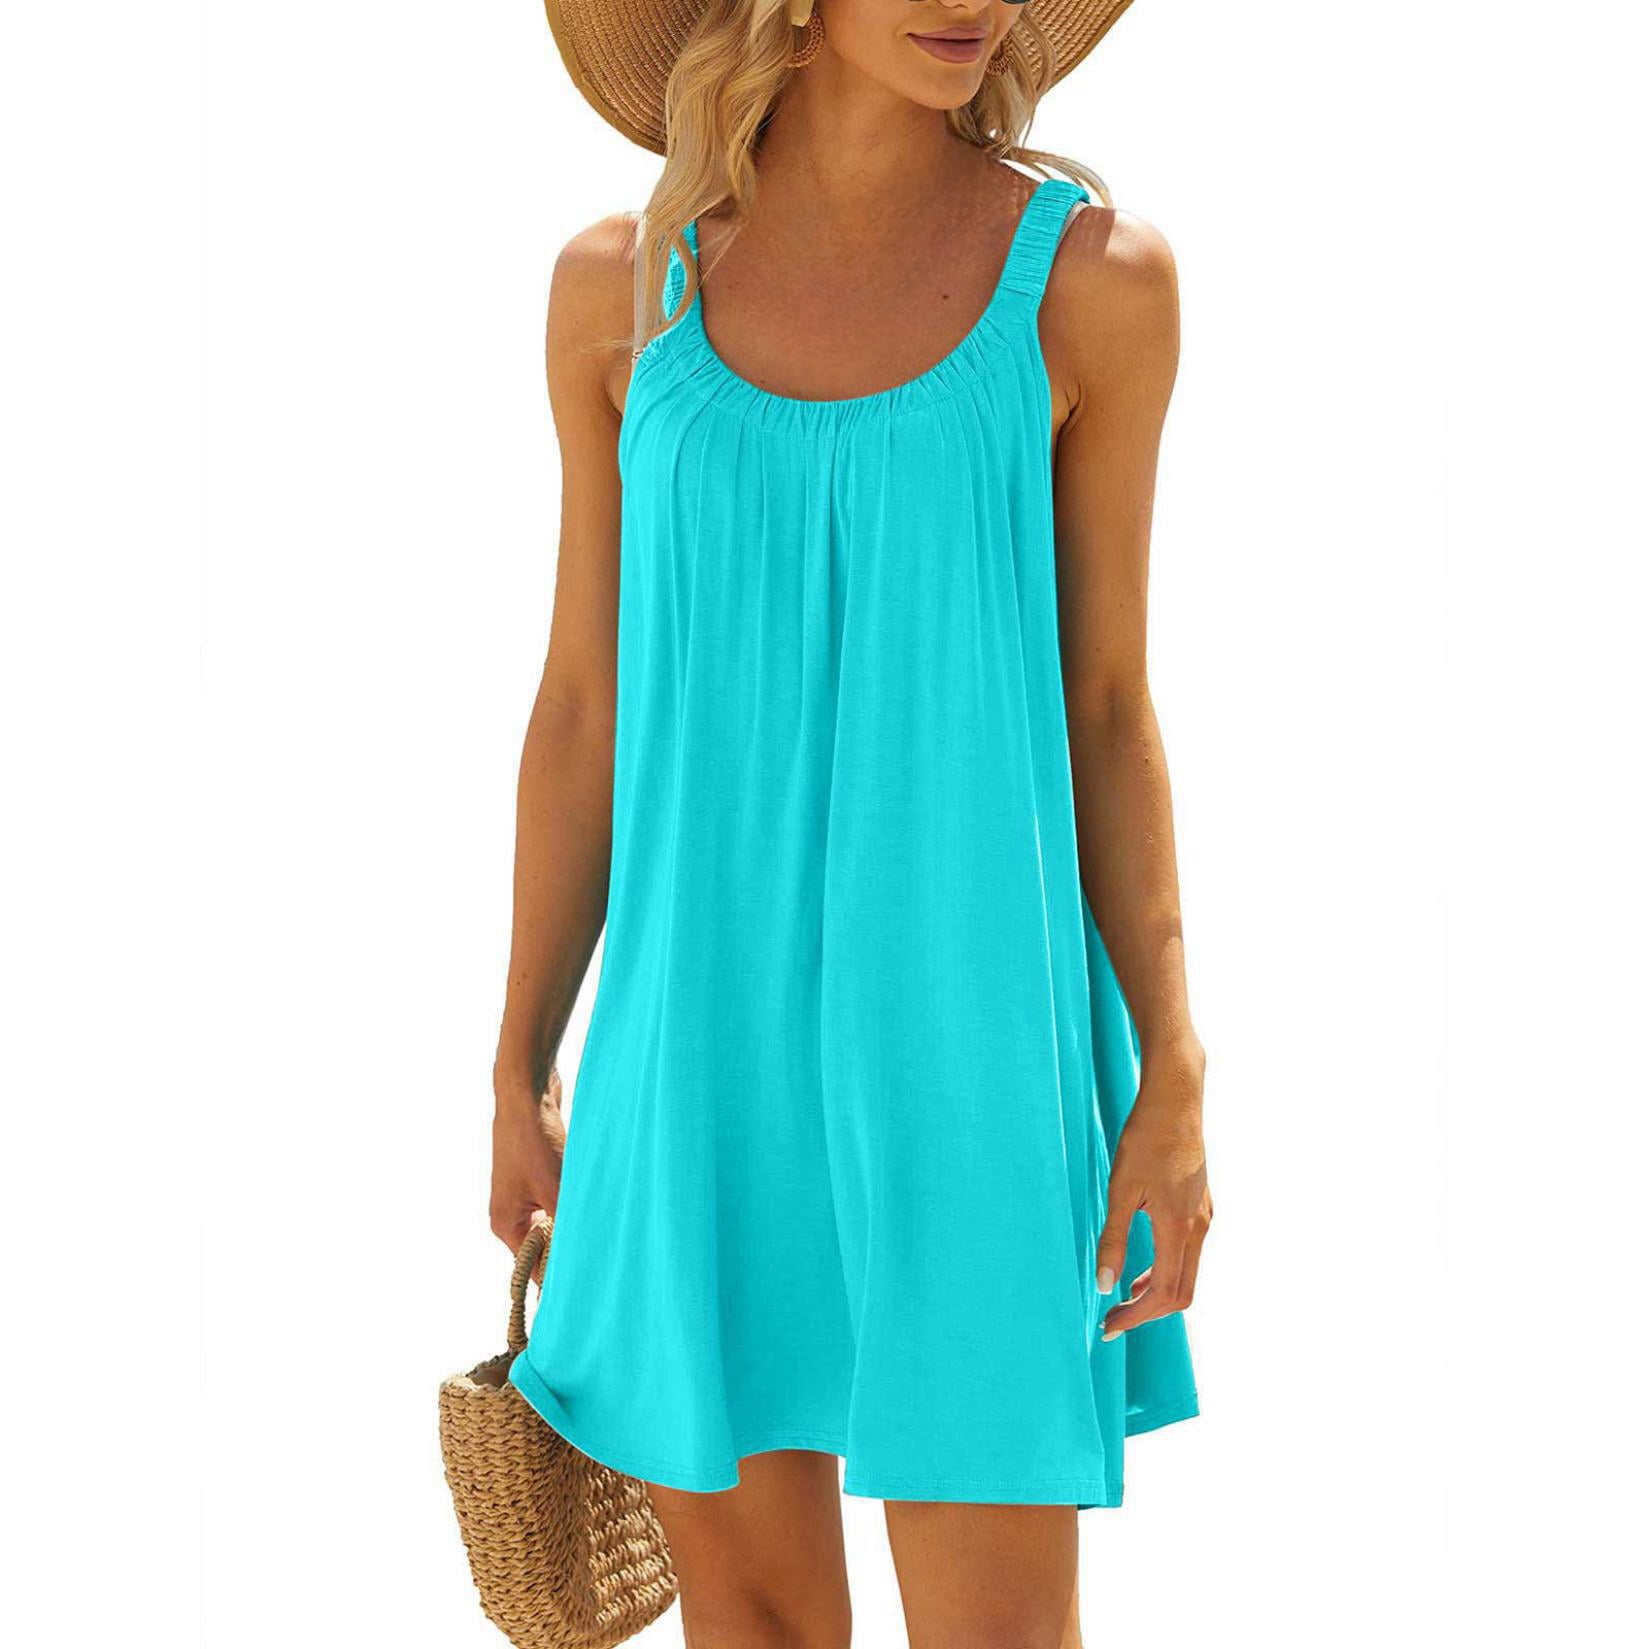 FAIWAD Summer Dresses for Women Sleeveless Strap Beach Sundress Casual ...